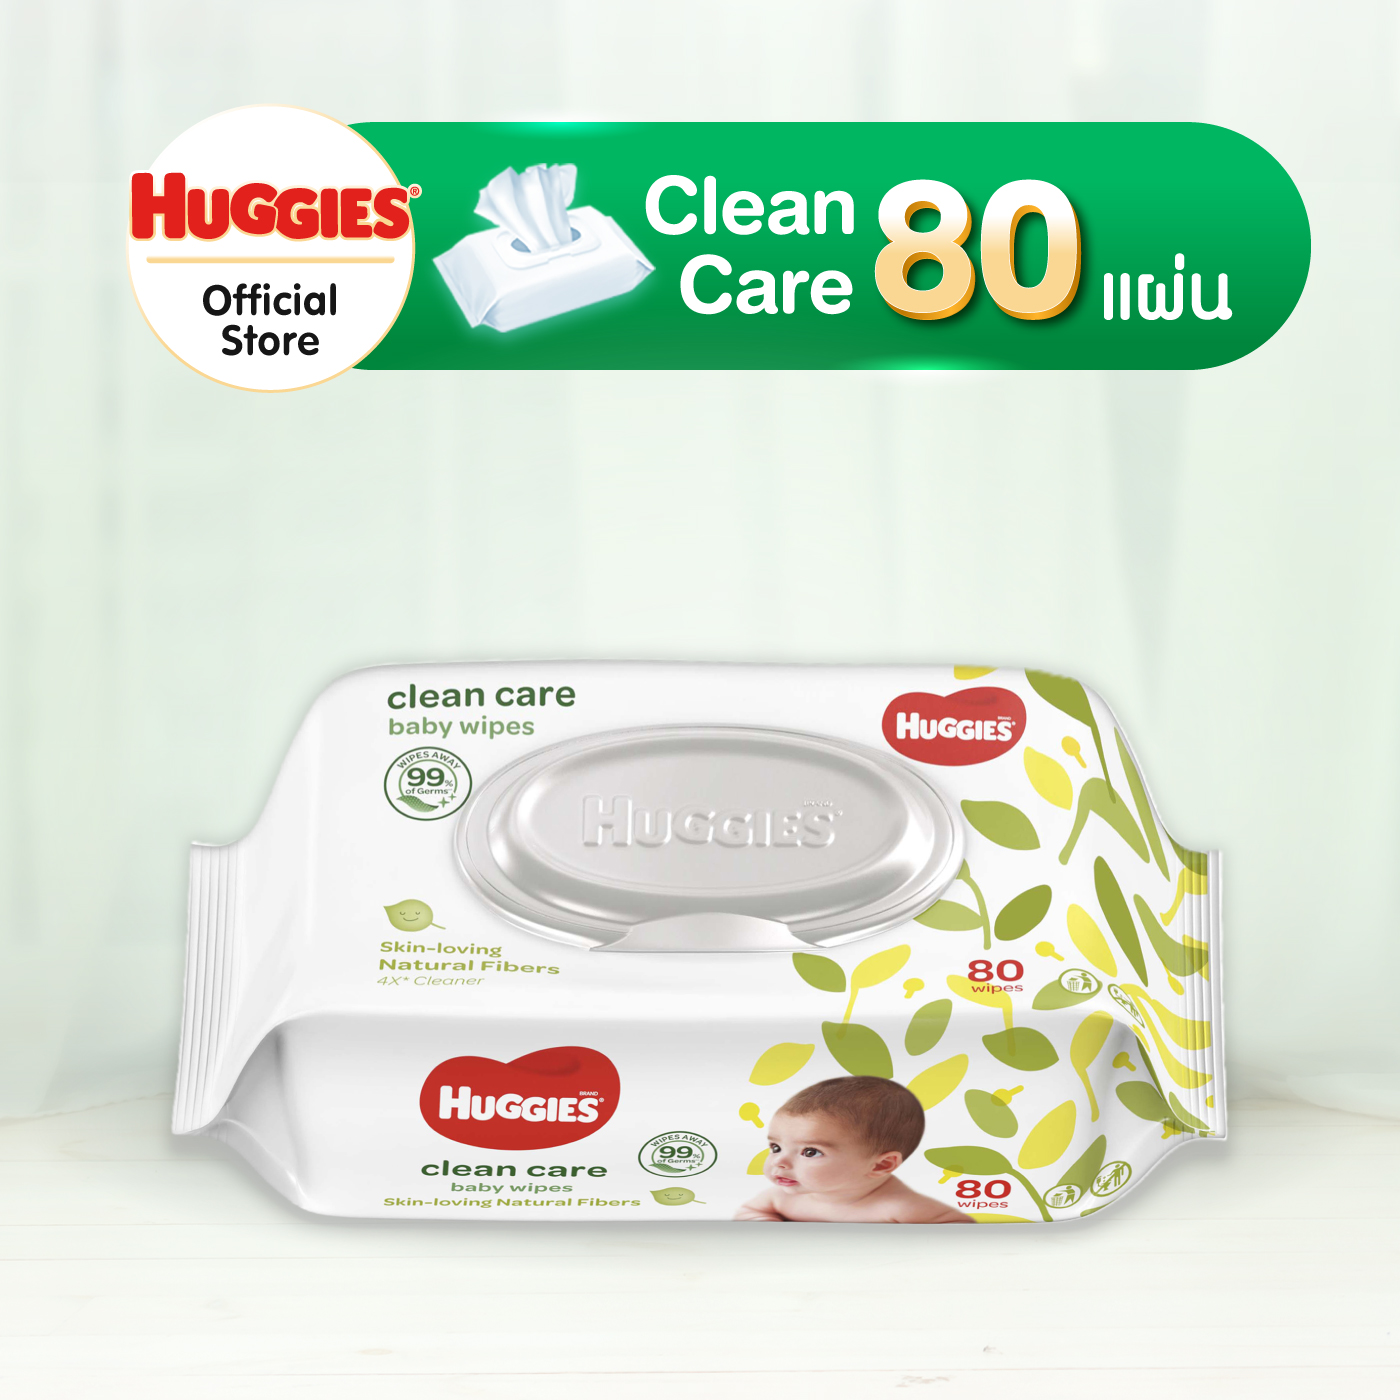 Huggies Clean Care Baby wipes ทิชชู่เปียก สำหรับเด็ก ฮักกี้ส์ คลีน แคร์ 80 แผ่น